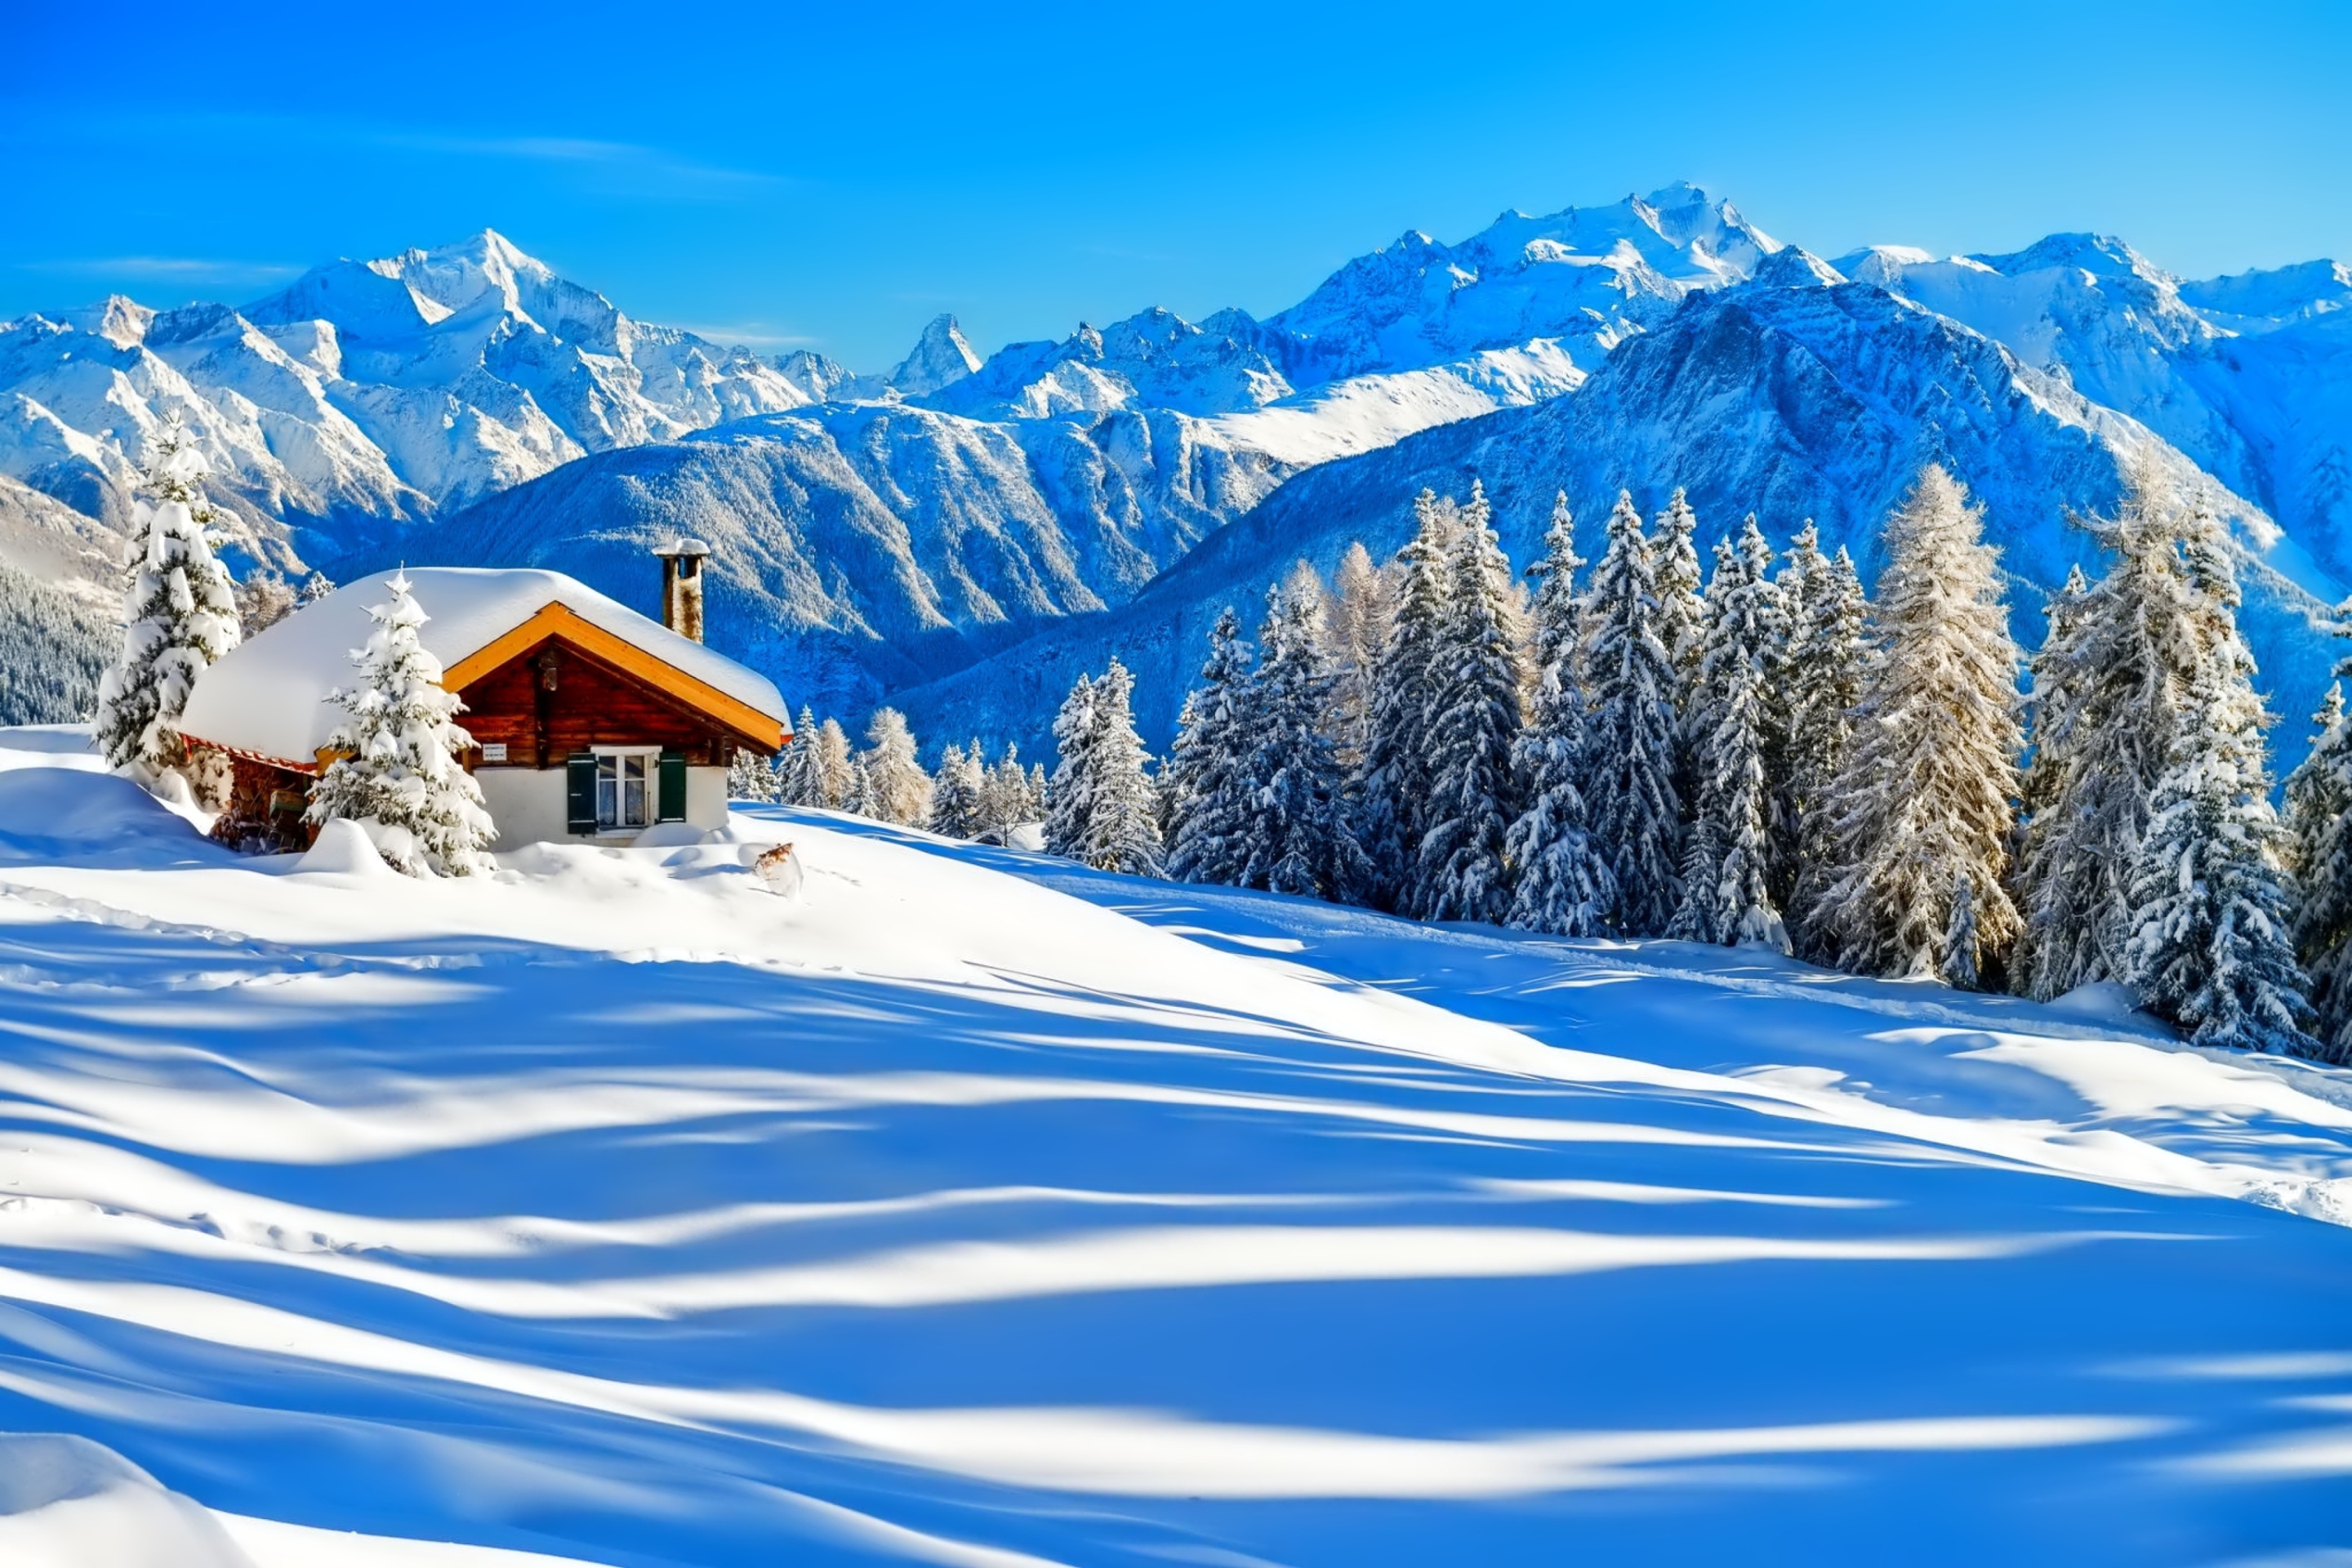 Switzerland Alps in Winter wallpaper 2880x1920